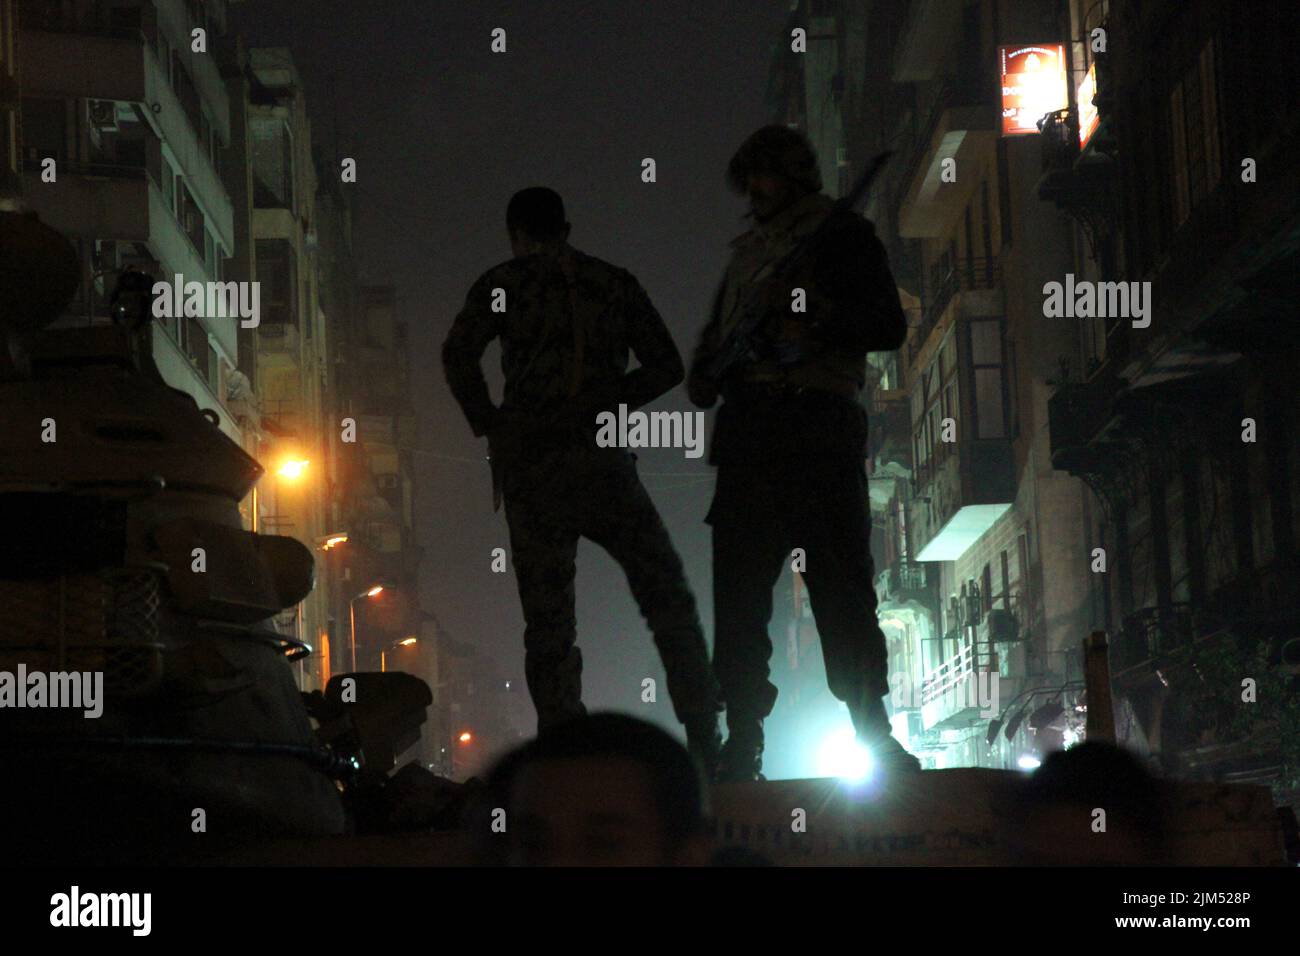 Cairo, Egitto. La rivoluzione primaverile araba, del 2011, che rovesciò il regime del presidente Hosni Mubarak. Foto Stock